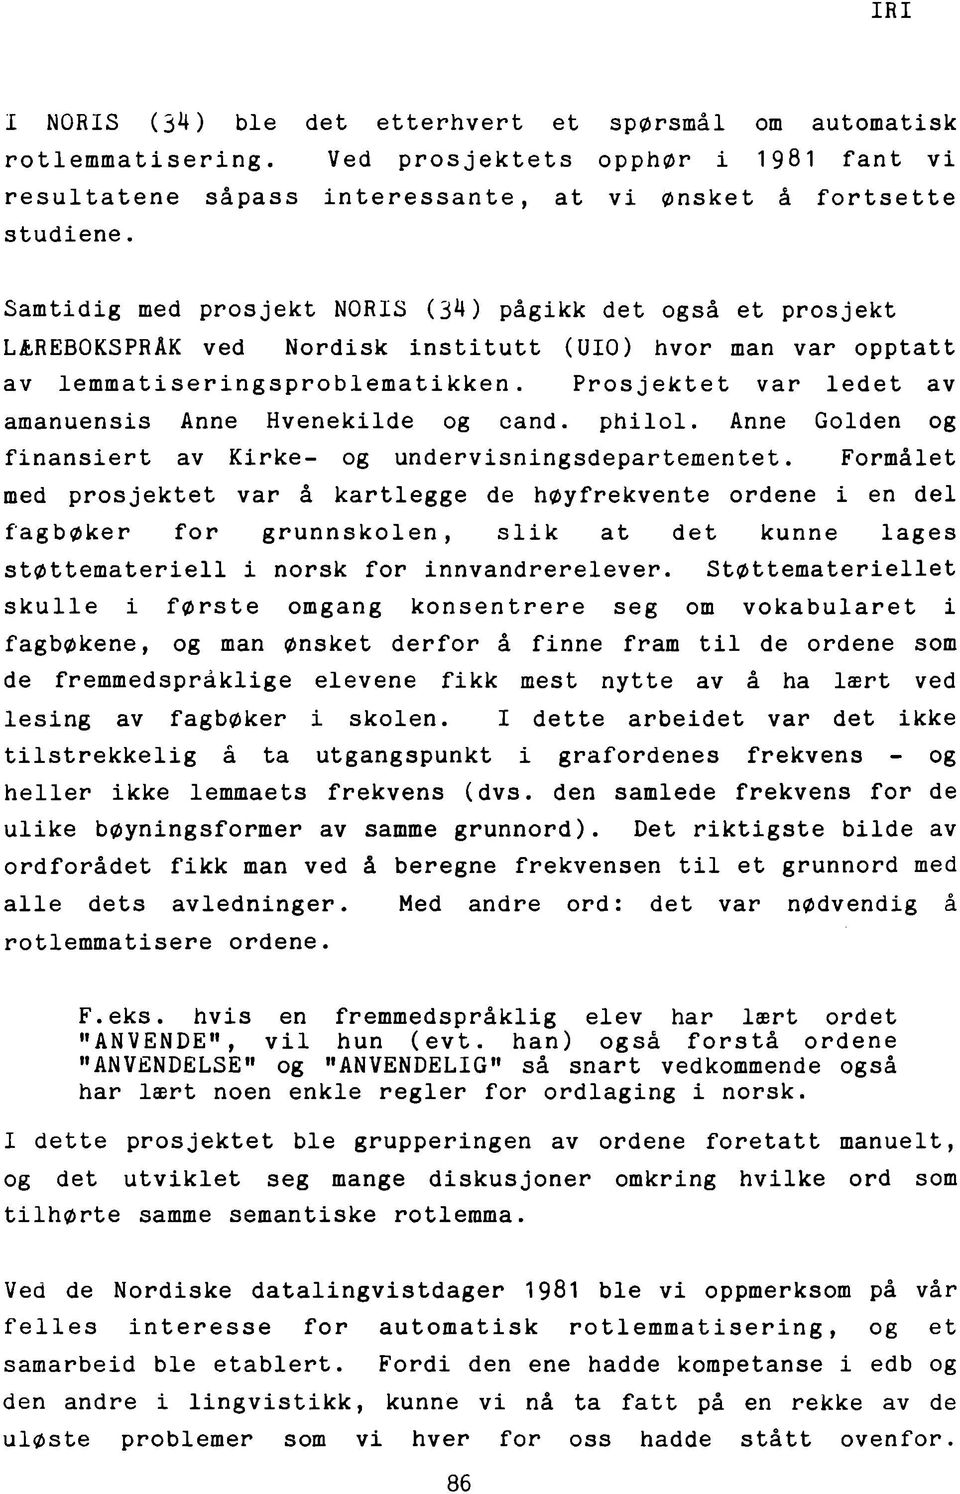 Samtidig med prosjekt NORIS (3^) pågikk det også et prosjekt LÆREBOKSPRÅK ved Nordisk institutt (UIO) hvor man var opptatt av l e m m a t i s e r i n g s p r o b l e m a t i k k e n.